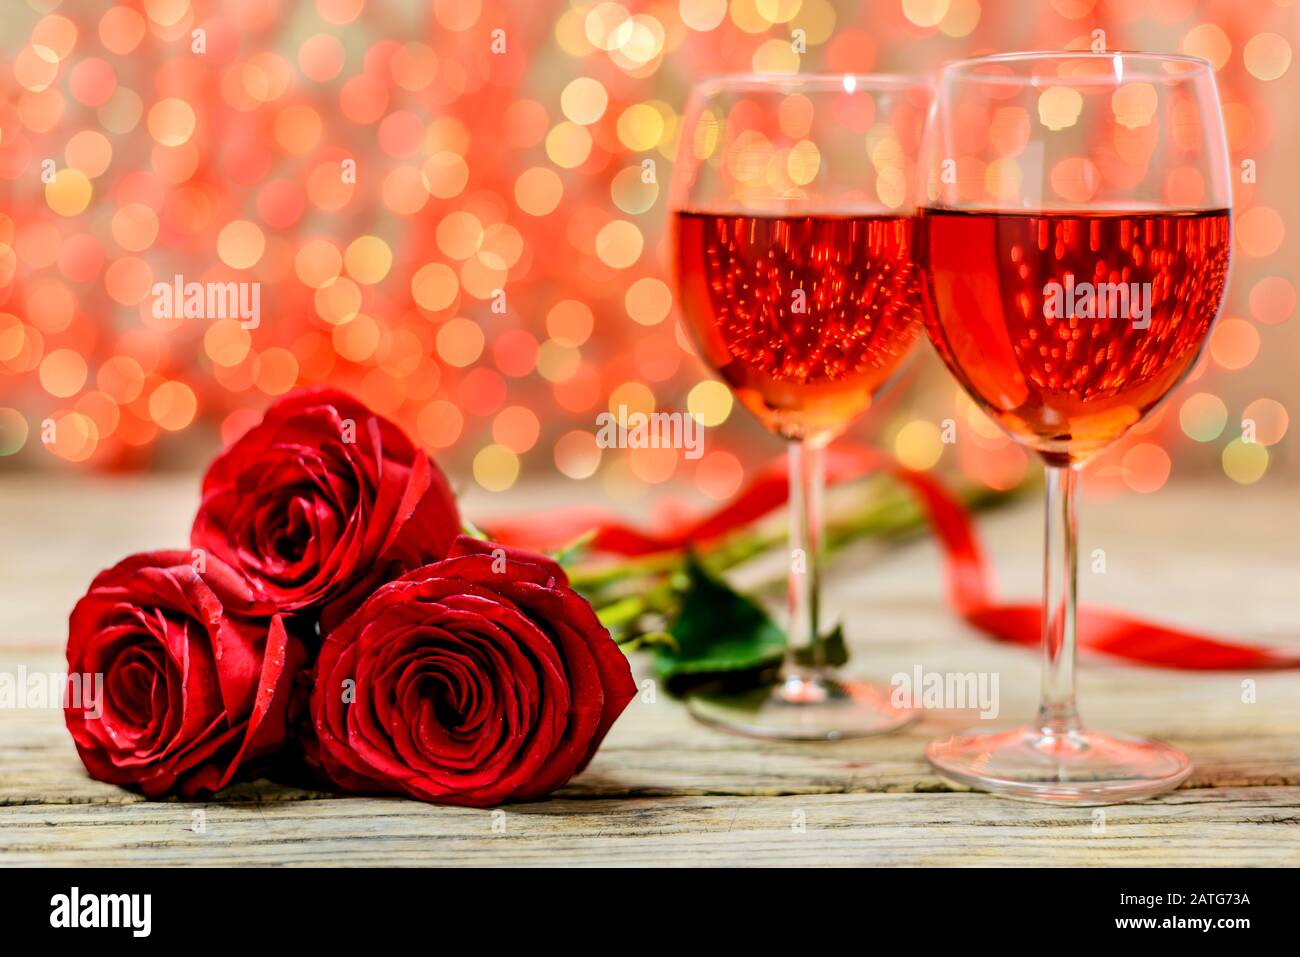 Concepto del día de San Valentín. Dos copas de vino y rosas rojas en una antigua mesa de madera frente a un fondo luminoso difuminado con espacio para texto. S Foto de stock